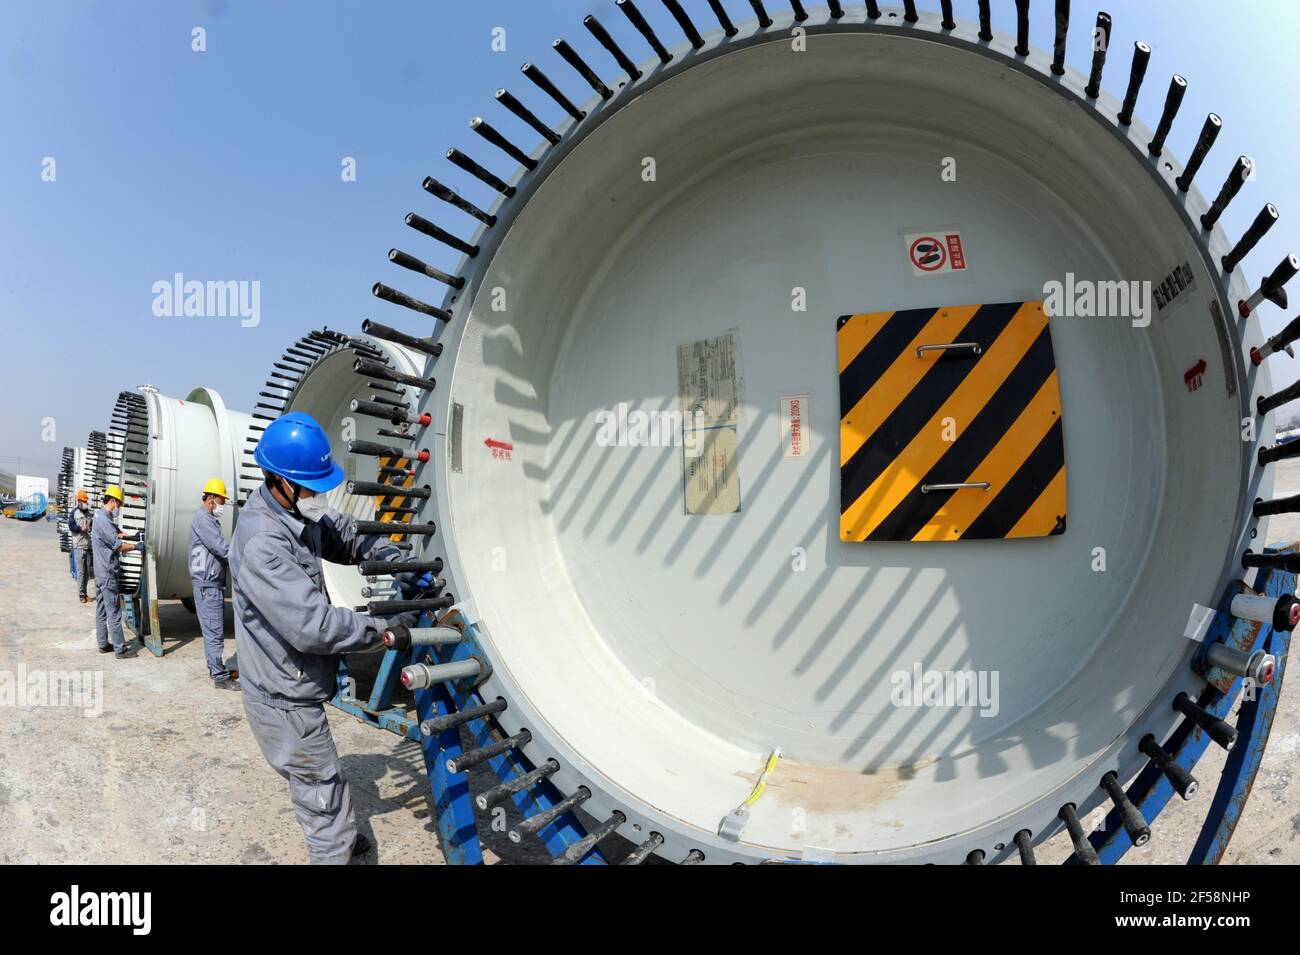 LIANYUNGANG, CHINA - 25 DE MARZO de 2021 - los trabajadores llevan a cabo una operación de producción en un taller de producción nacional de United Power Technology (Lianyungang) Co., Ltd en Lianyungang, provincia de Jiangsu, China, marzo de 25, 2021. National United Power Technology (Lianyungang) Co., Ltd. Continúa llevando a cabo mejoras e innovación de productos e invierte en proyectos de I+D, fabricación, ventas y puesta en marcha de turbinas eólicas marinas 8-15MW y turbinas eólicas grandes terrestres 3.X-5.X. Hasta ahora, la producción ha aumentado un 92% en comparación con el mismo período del año pasado. (Foto de Wang Chun / Costfoto/Sipa USA) Foto de stock